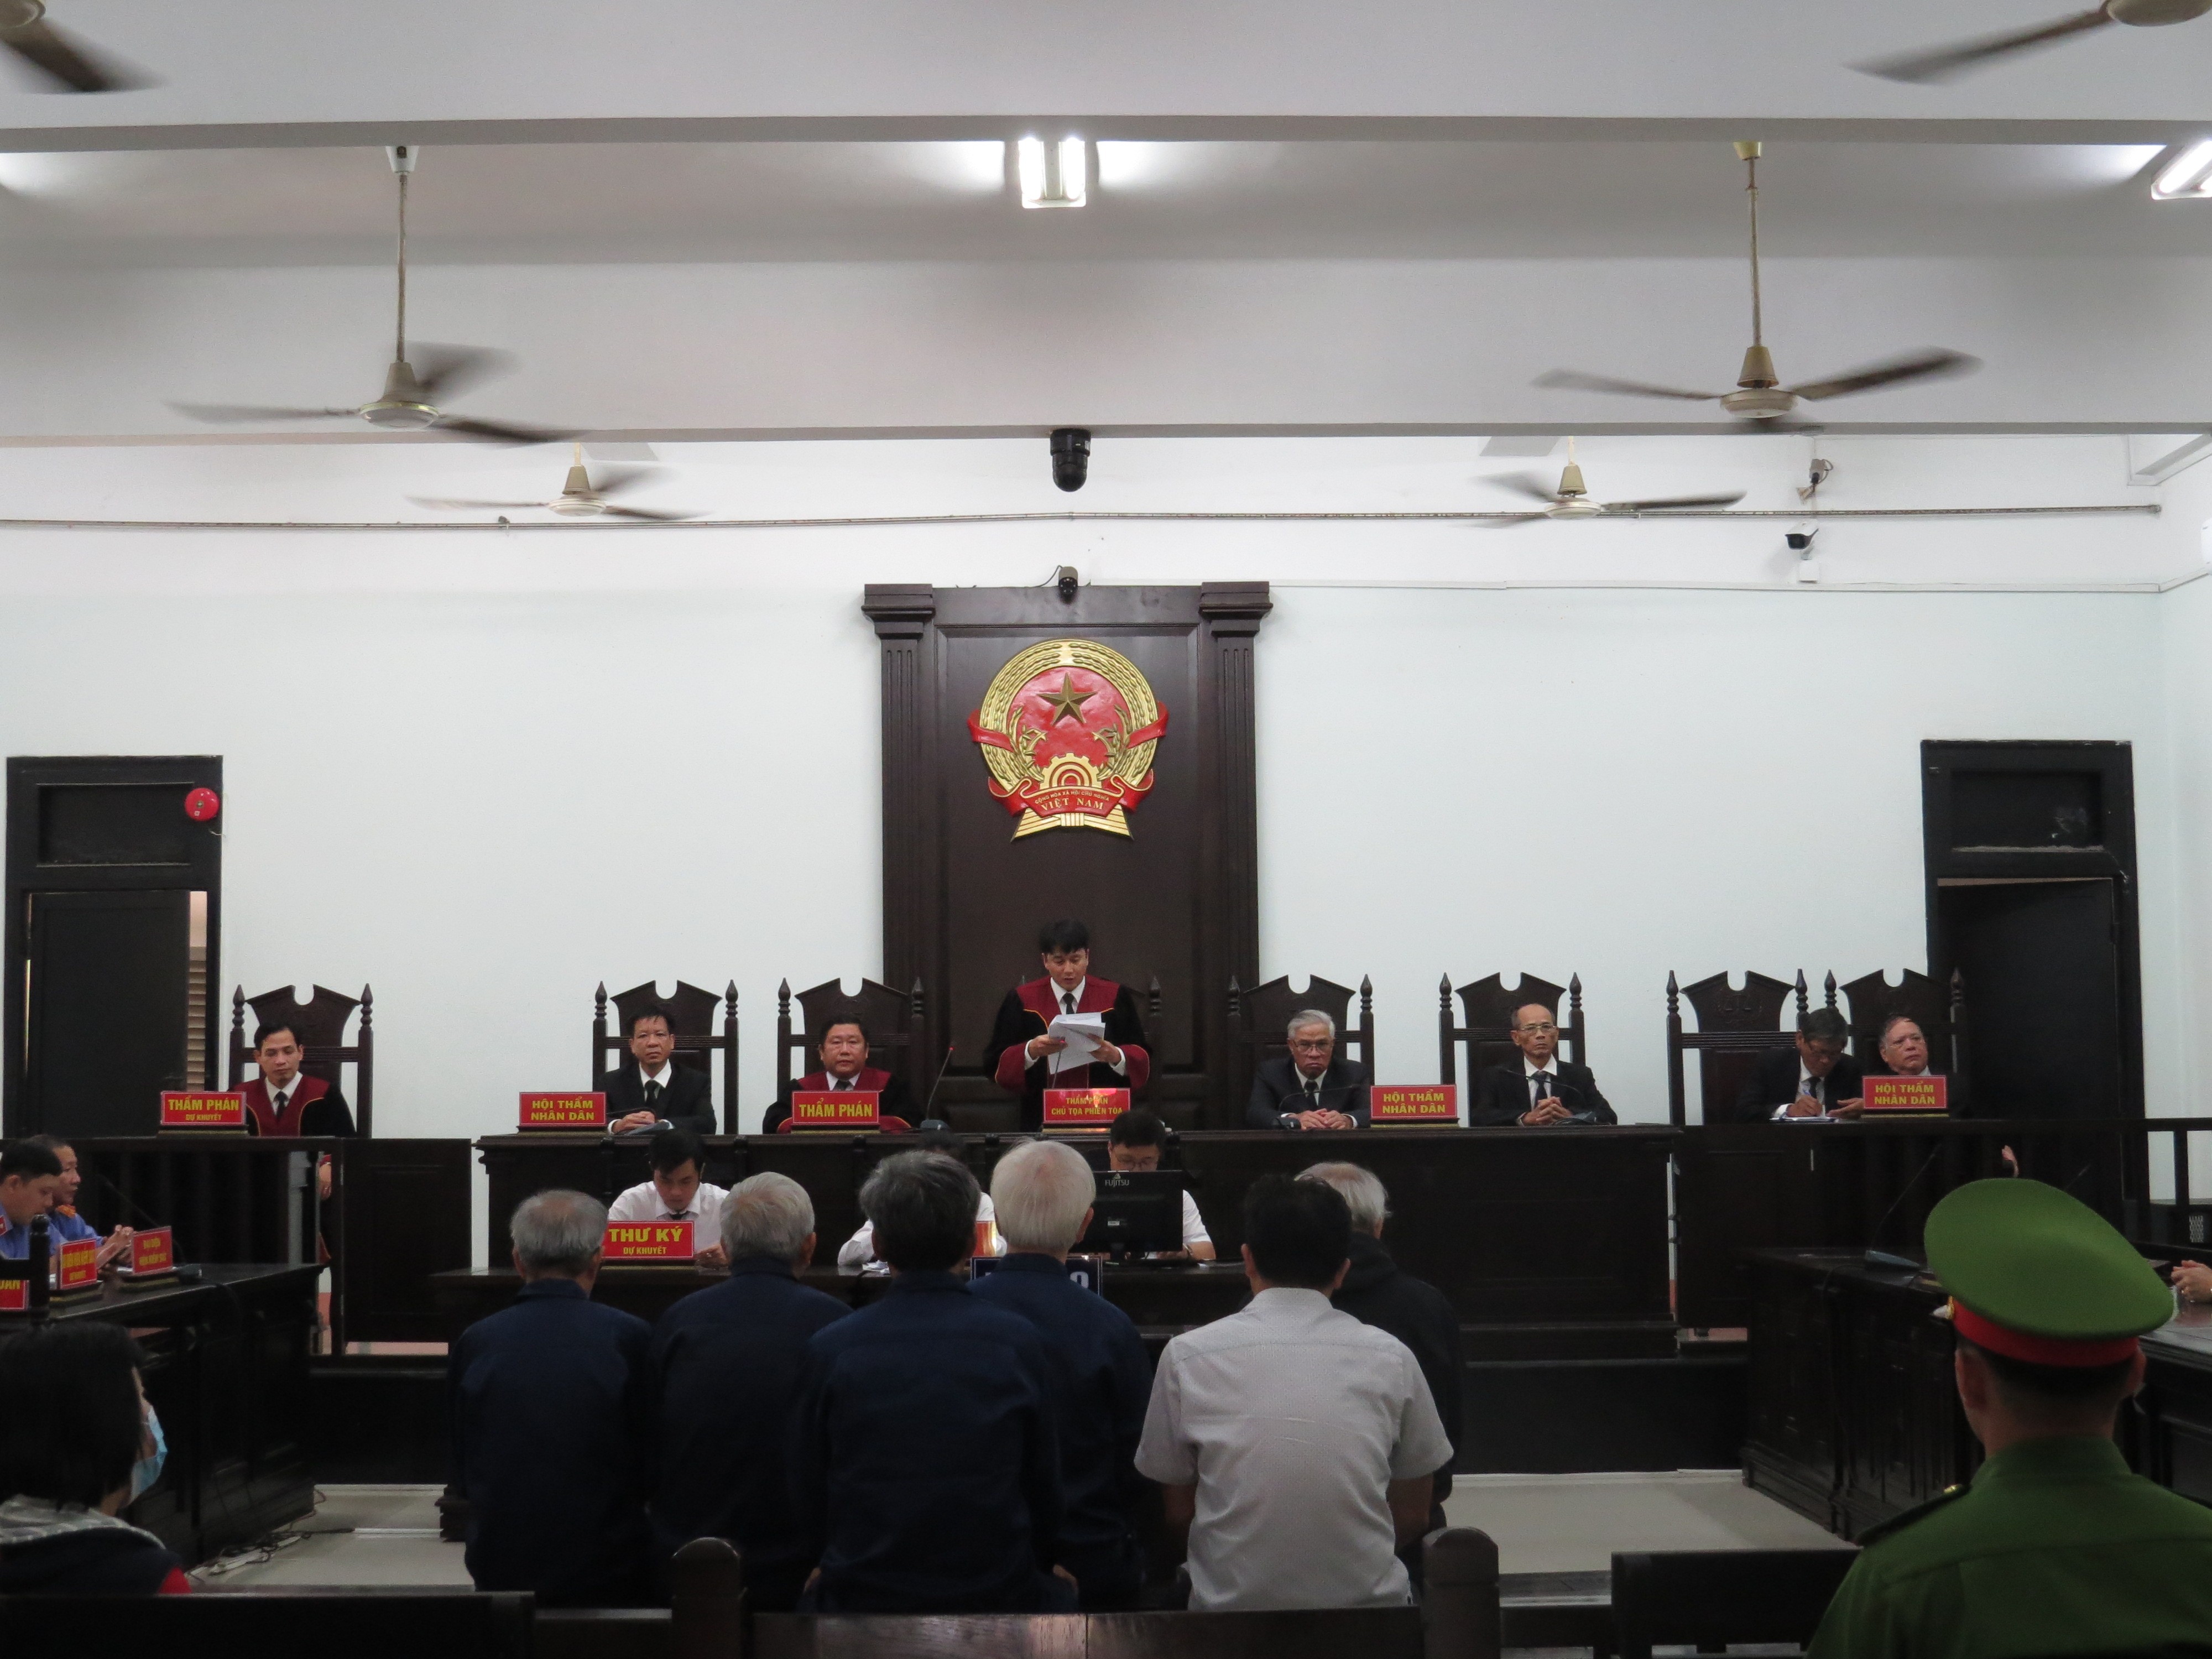 An ninh - Hình sự - 9 cựu quan chức tỉnh Khánh Hòa bị phạt từ 1,5 – 5 năm tù (Hình 2).